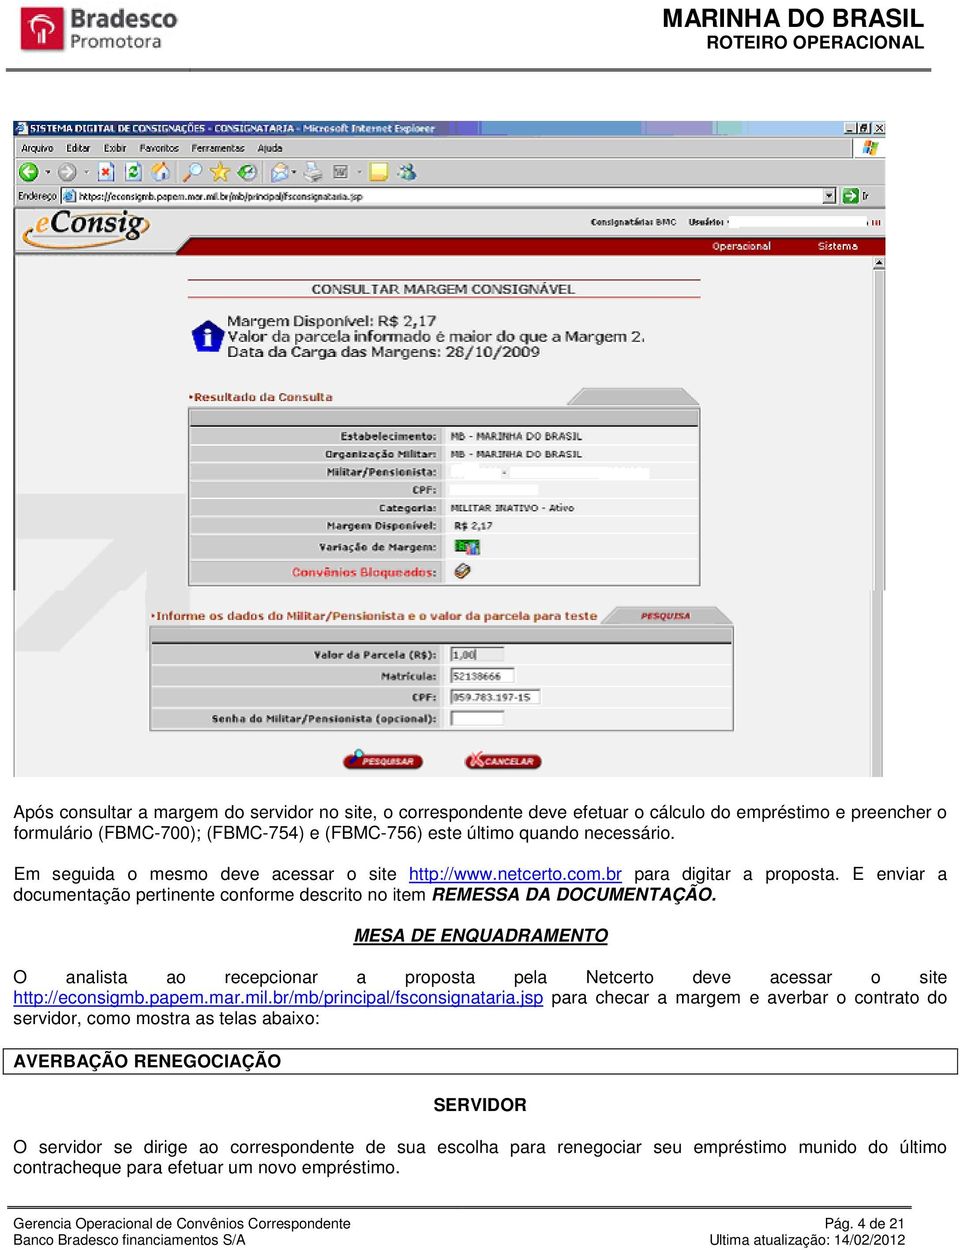 MESA DE ENQUADRAMENTO O analista ao recepcionar a proposta pela Netcerto deve acessar o site http://econsigmb.papem.mar.mil.br/mb/principal/fsconsignataria.